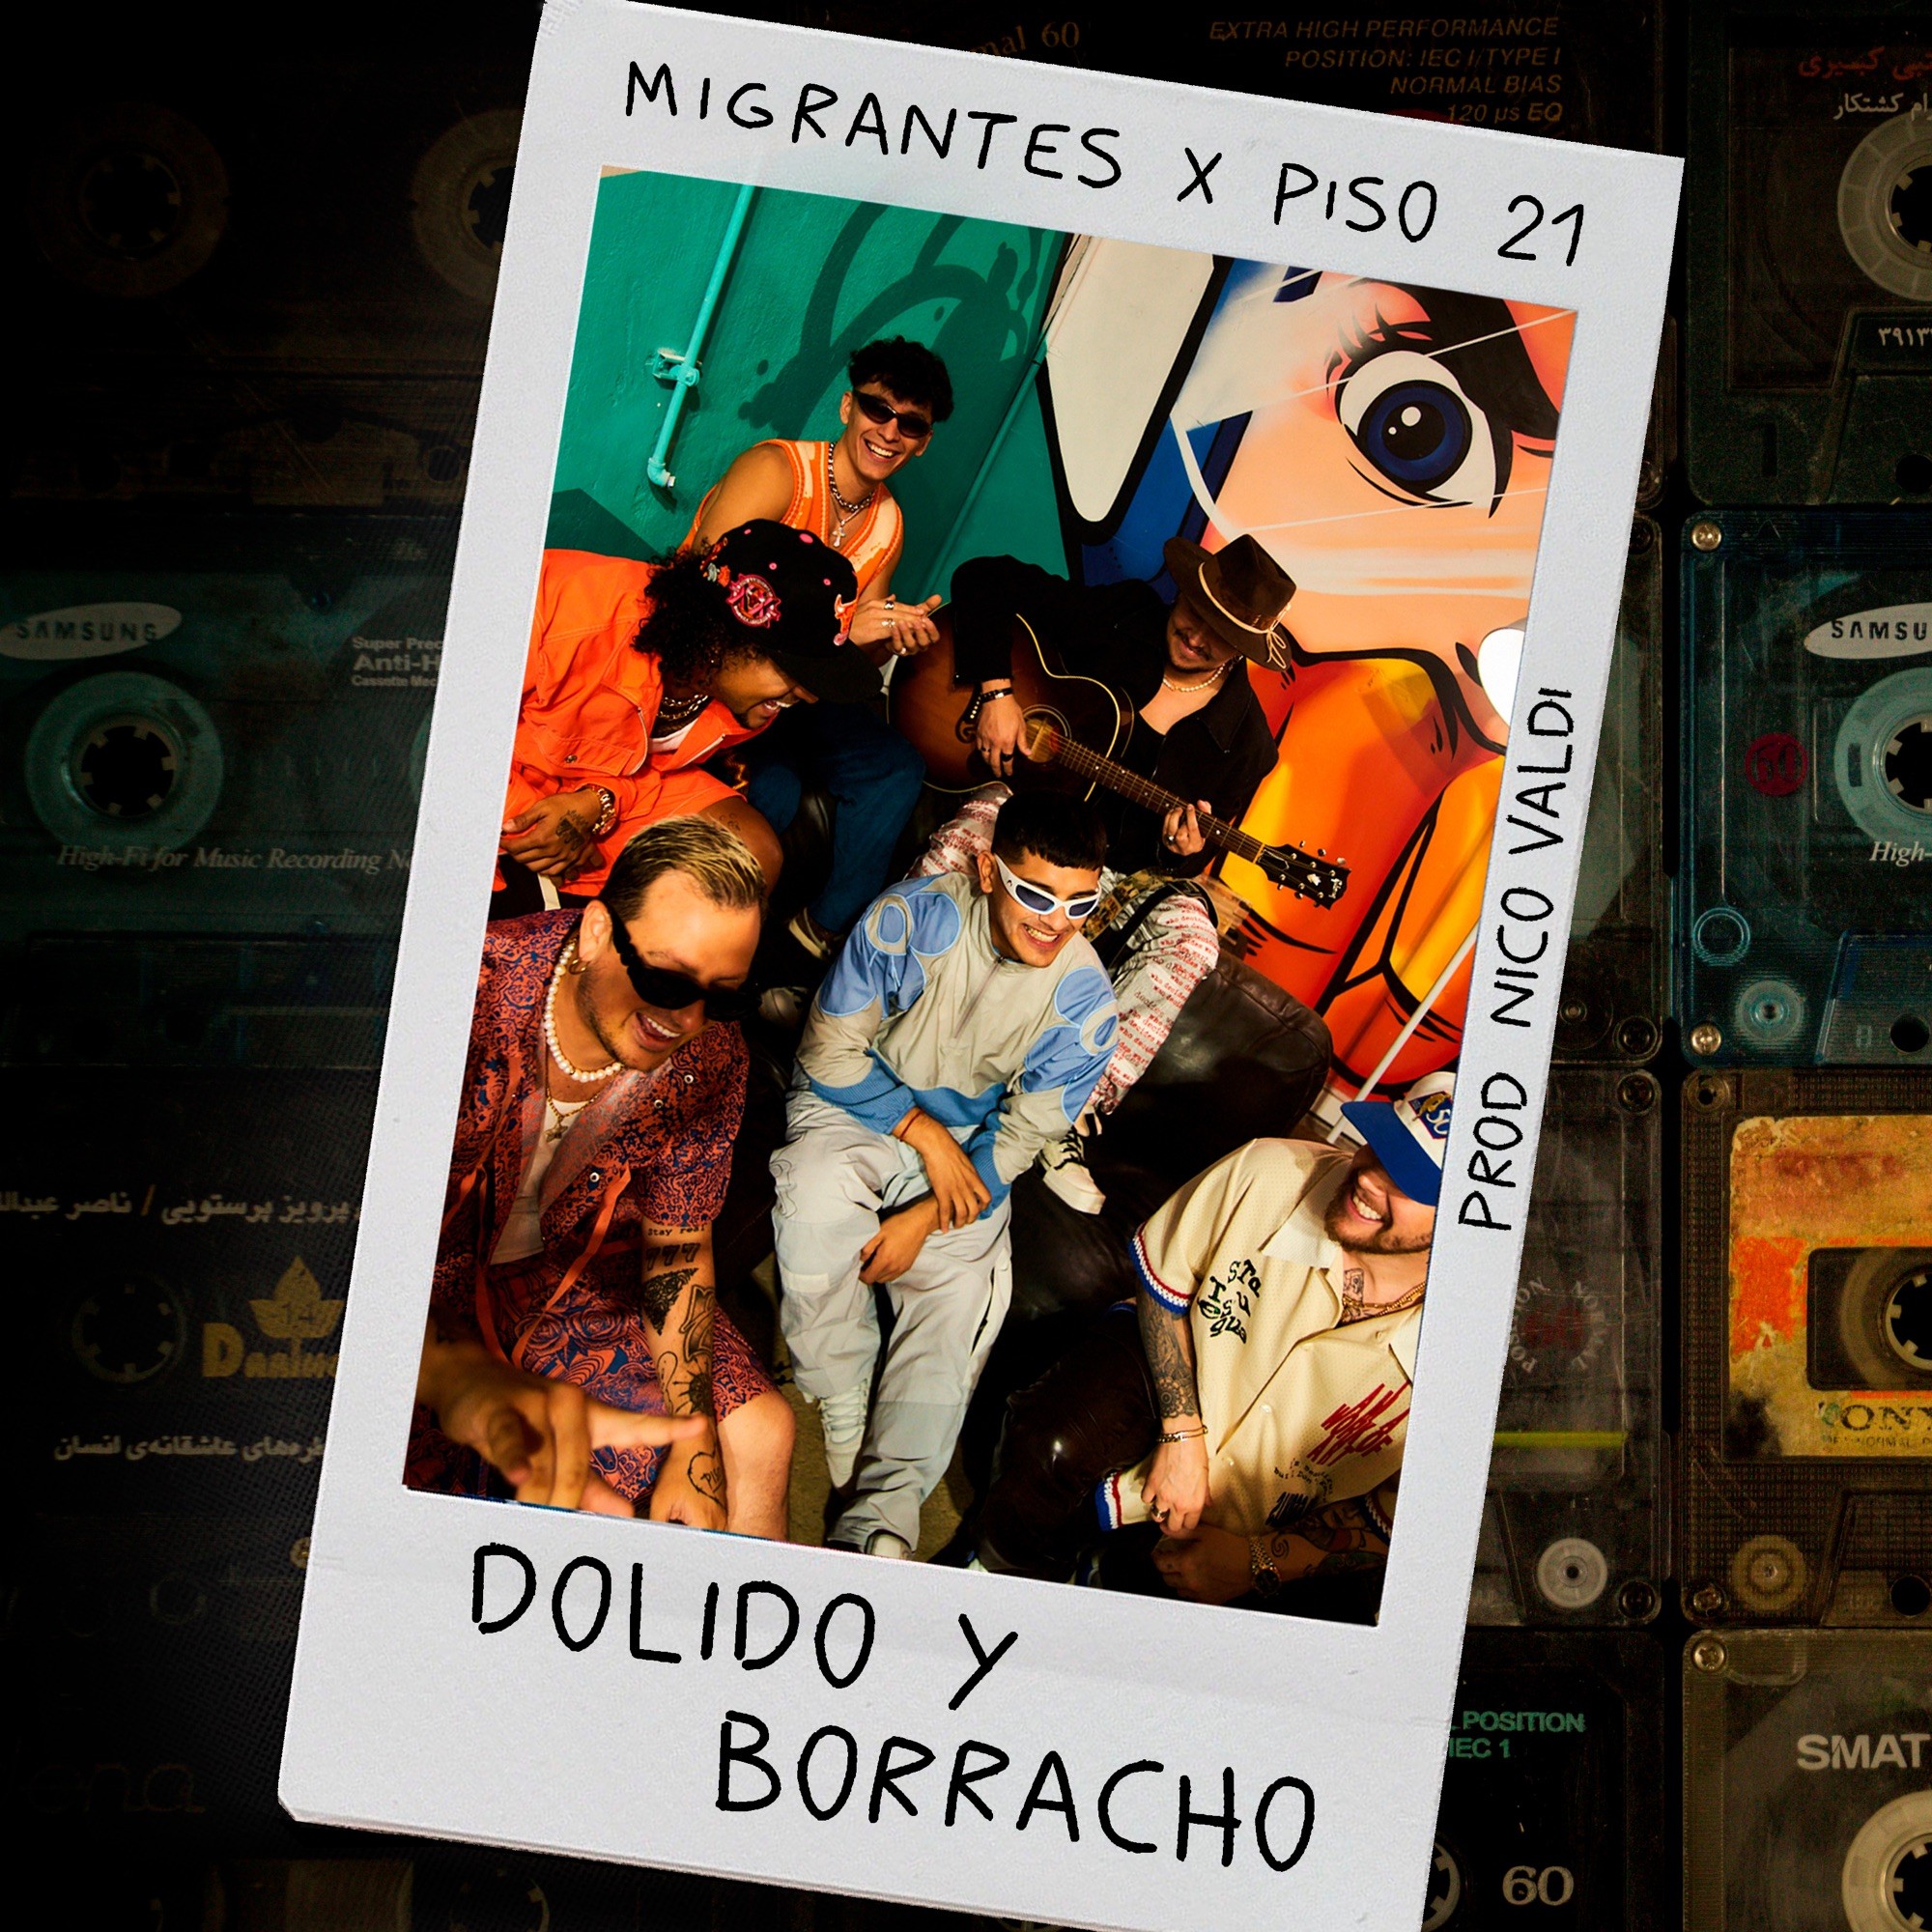 Migrantes-Piso-21-Nico-Valdi-Dolido-y-Borracho.jpg